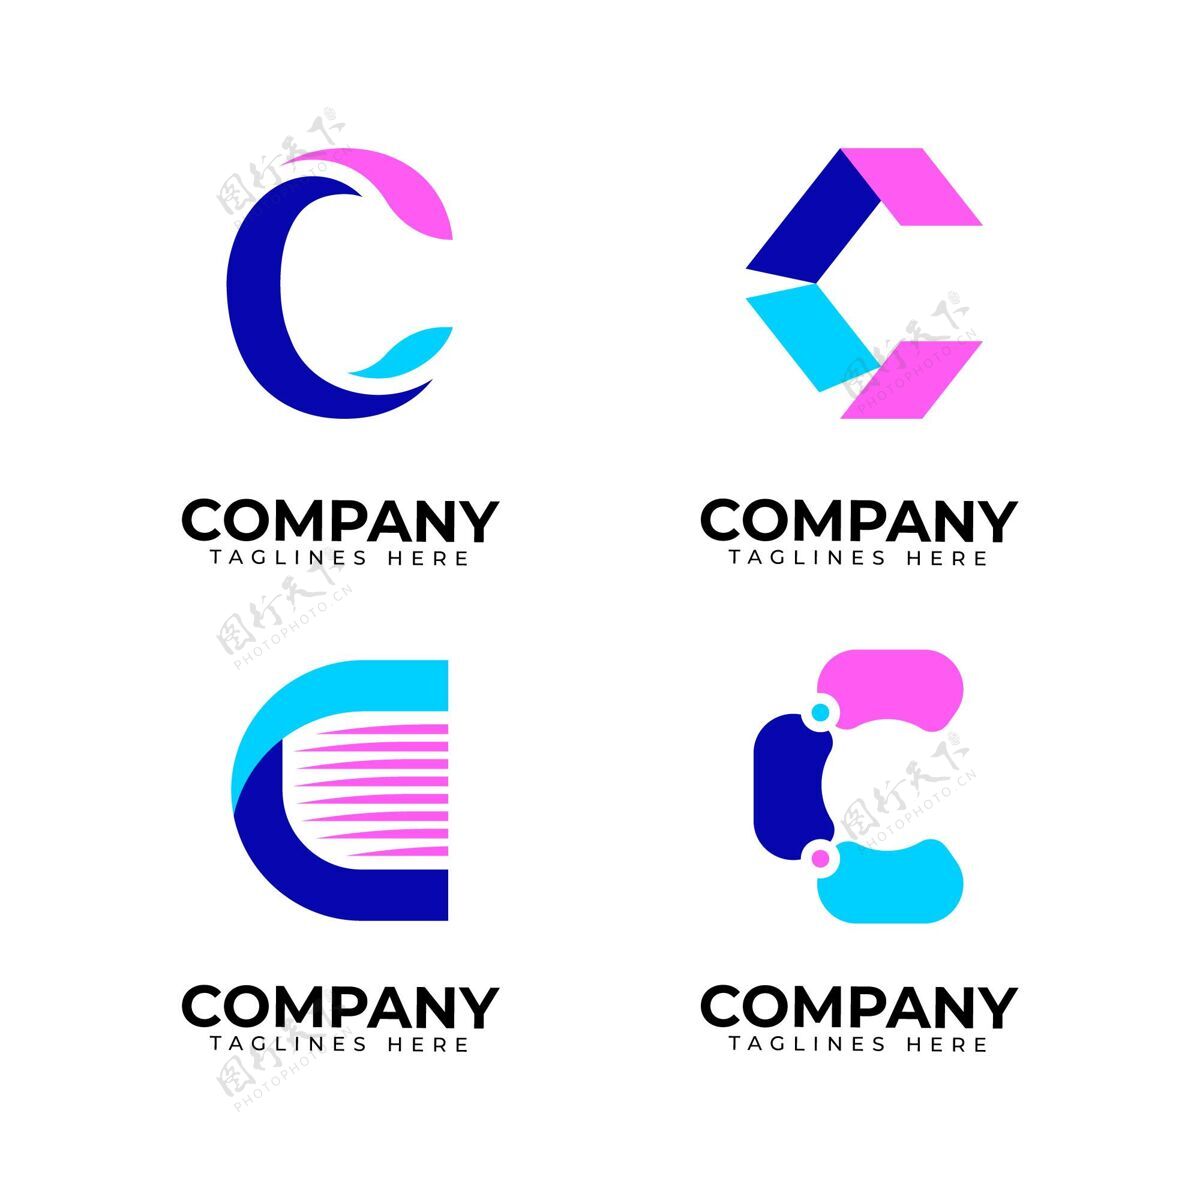 集合平面设计c标志系列企业企业标识标志